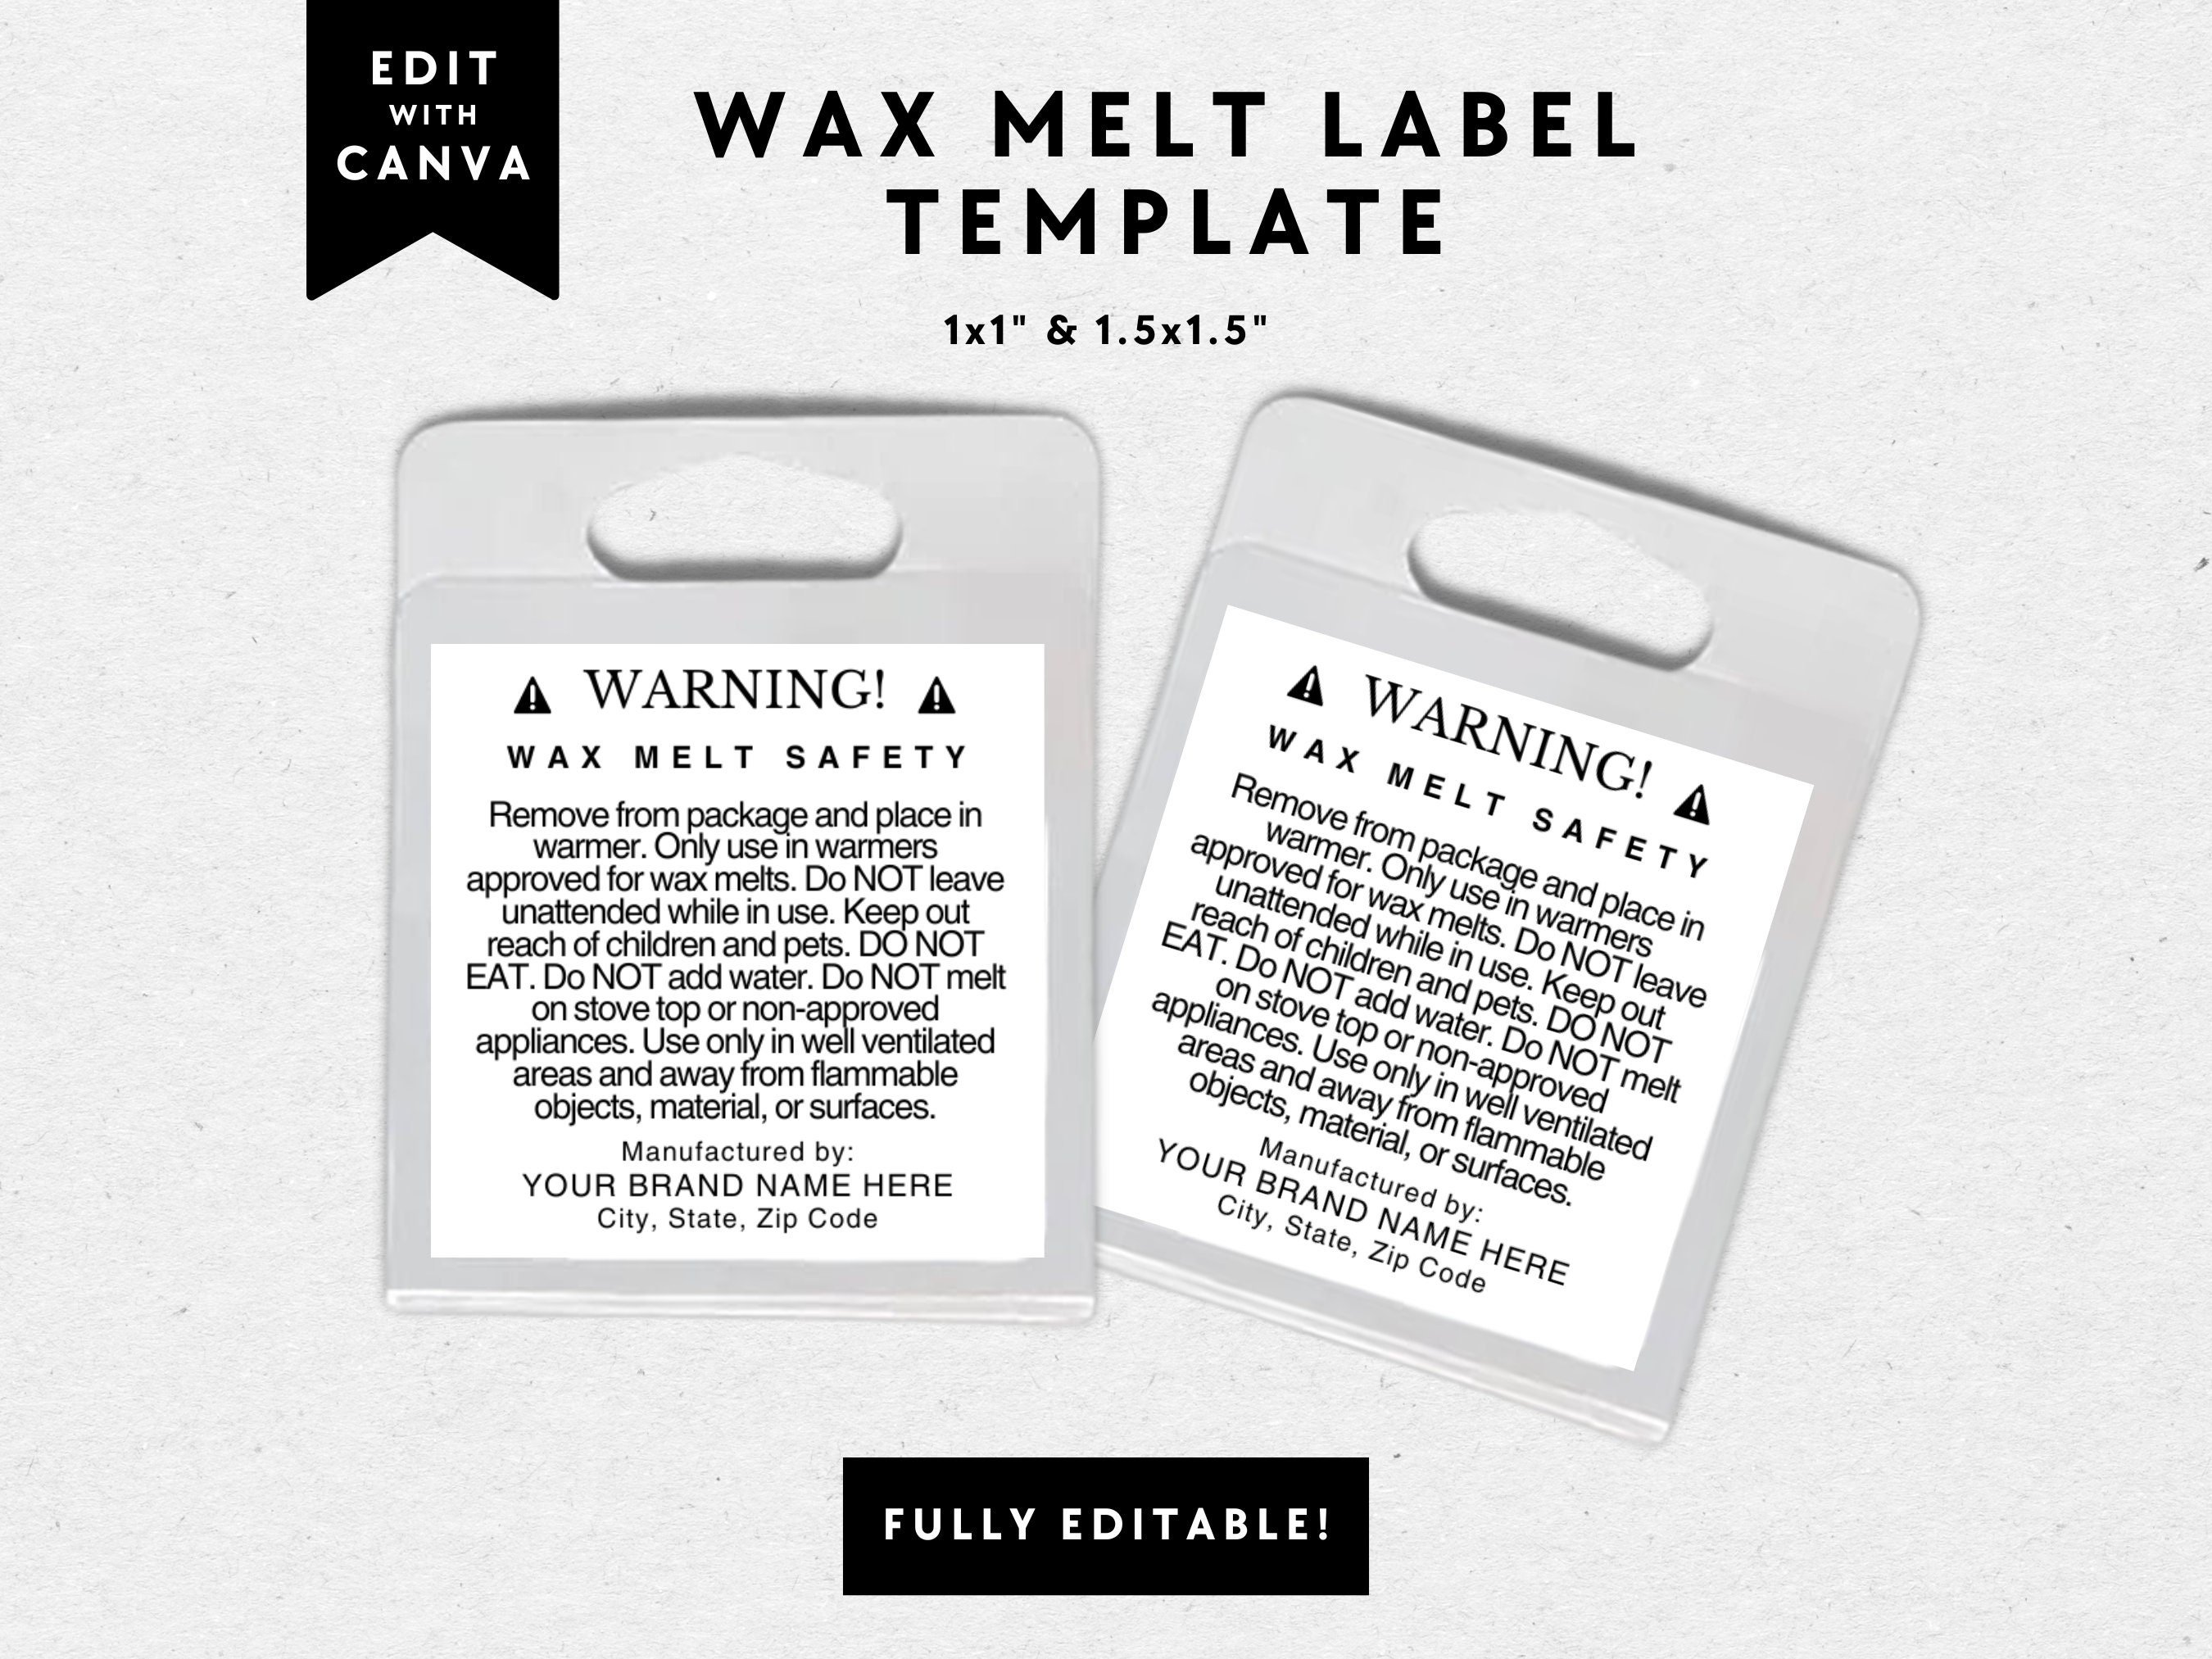 Make Your Own Wax Melt Sampler Box, Wax Melts, Variety Pack Scented Wax  Melts, Homemade Wax Melts, Wax Melt Gift Set 